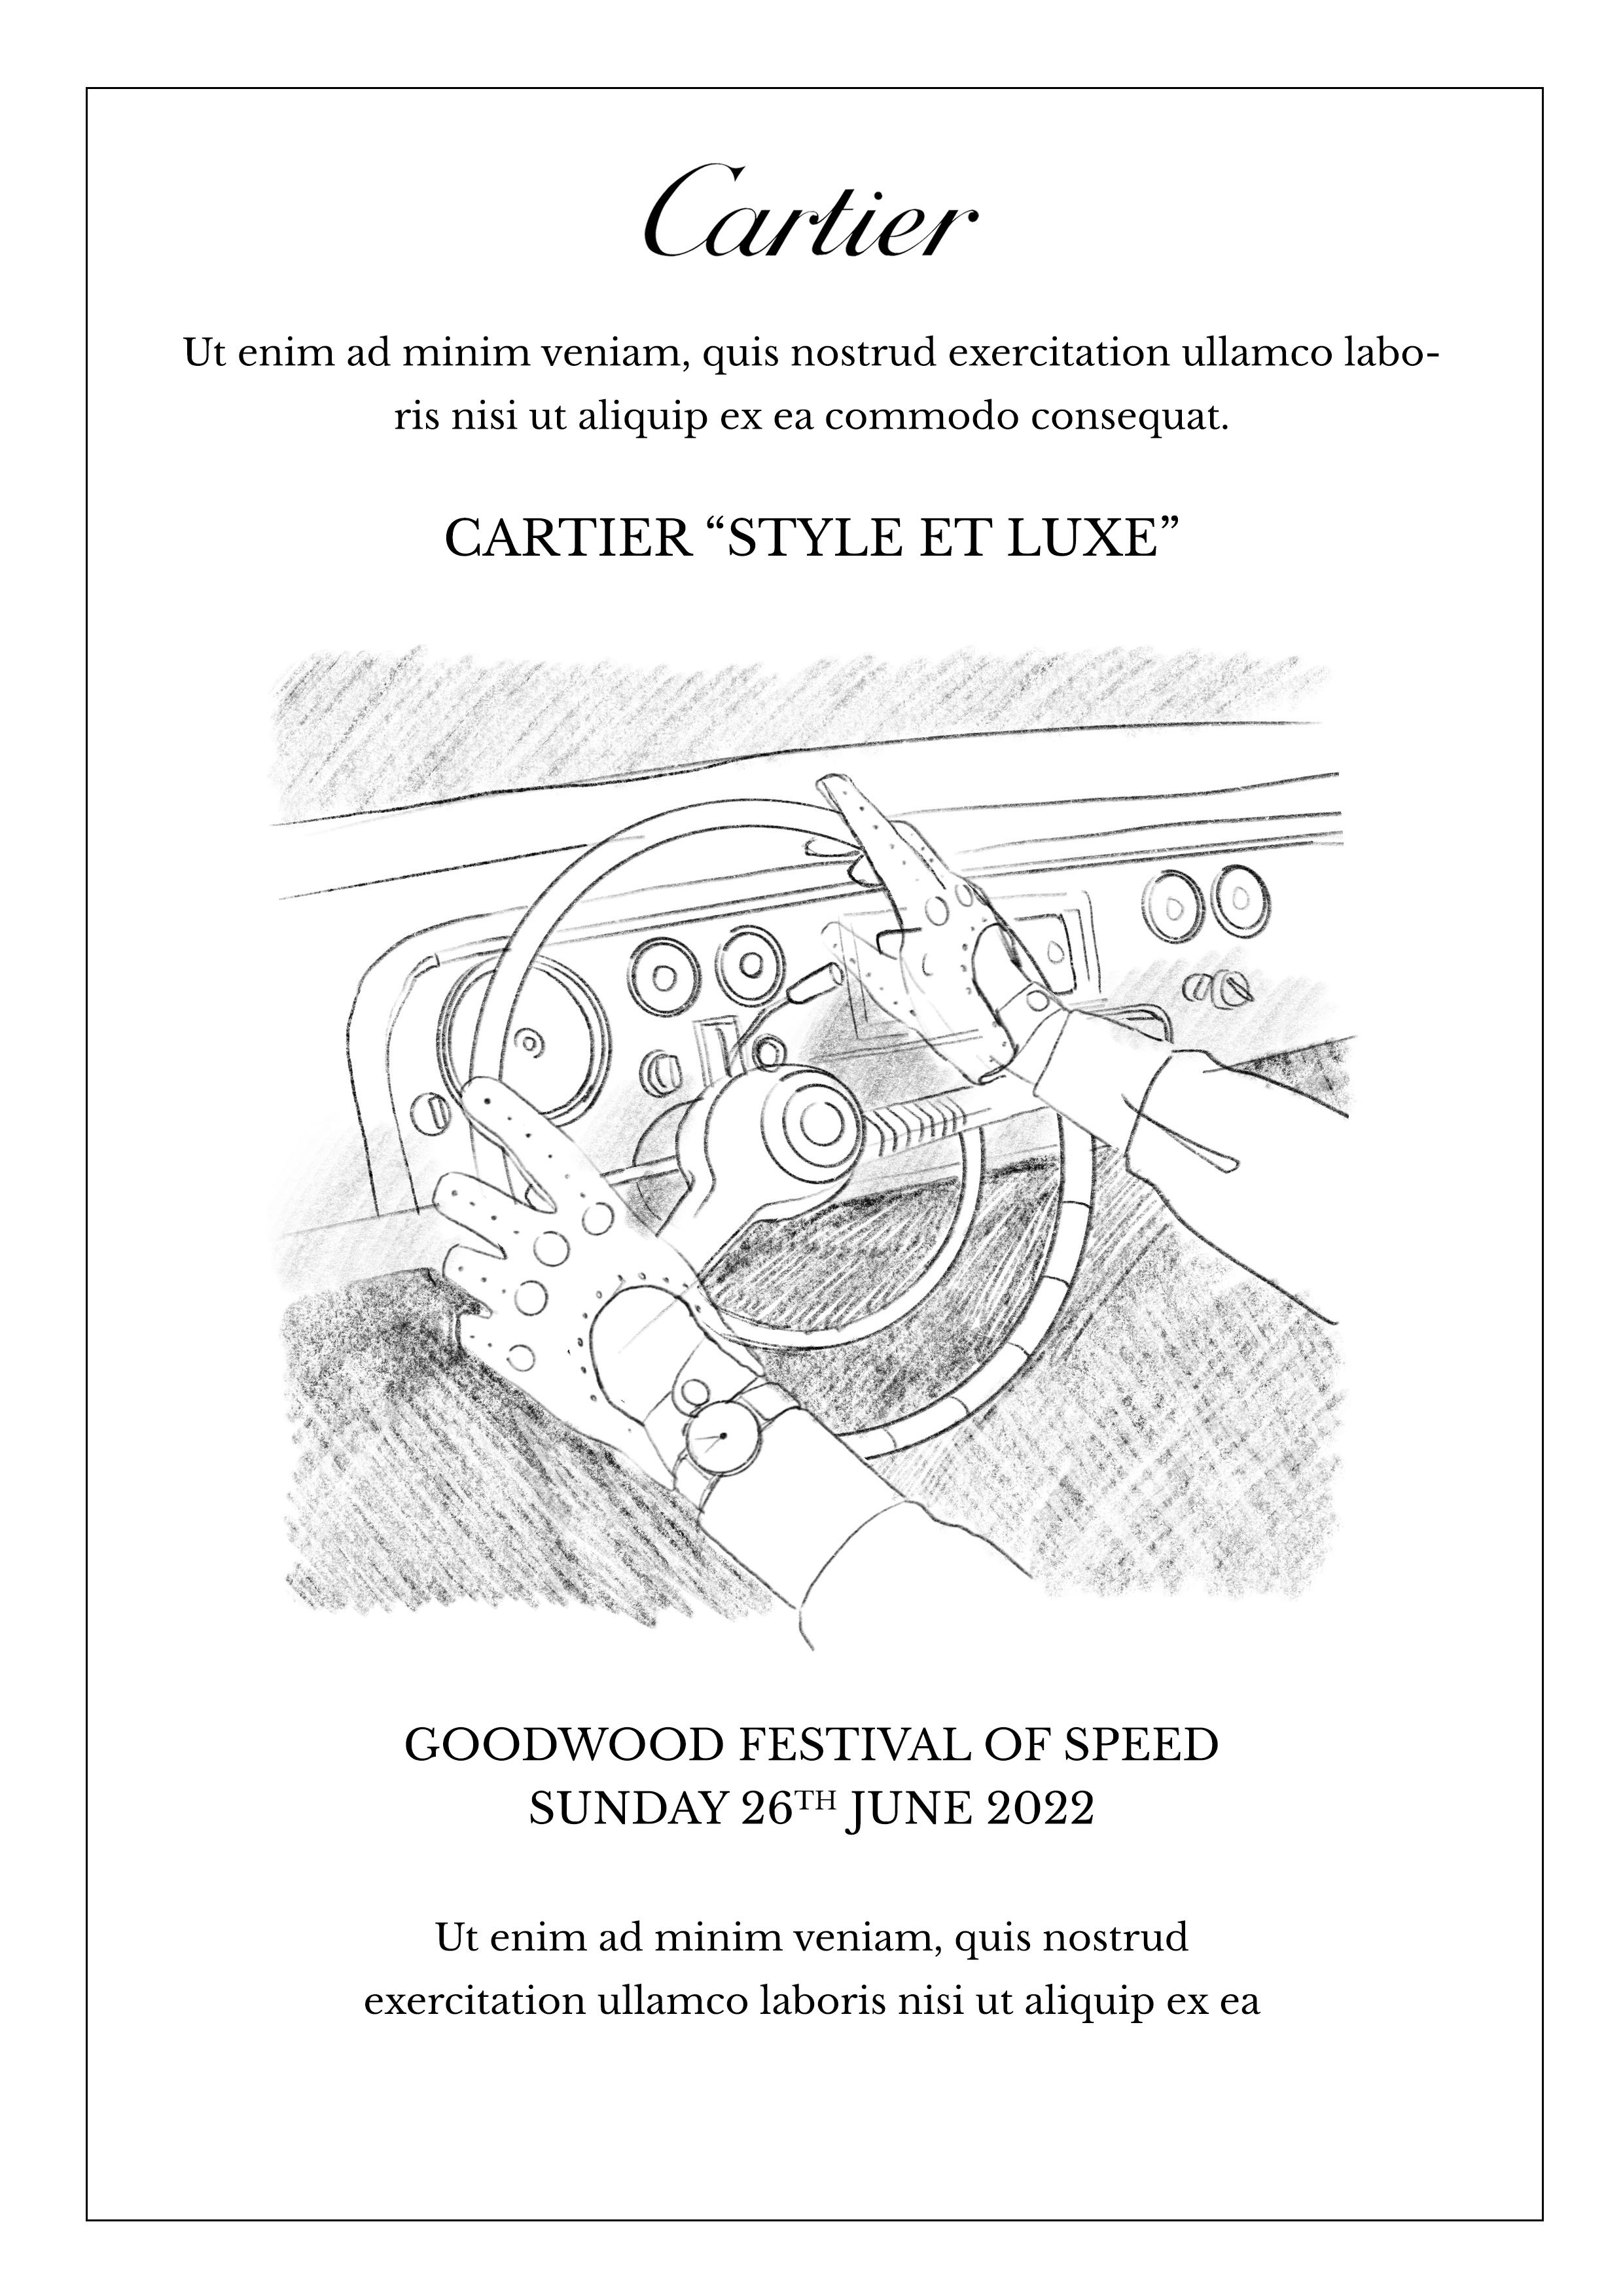 Cartier speed 2022 option 1.jpg